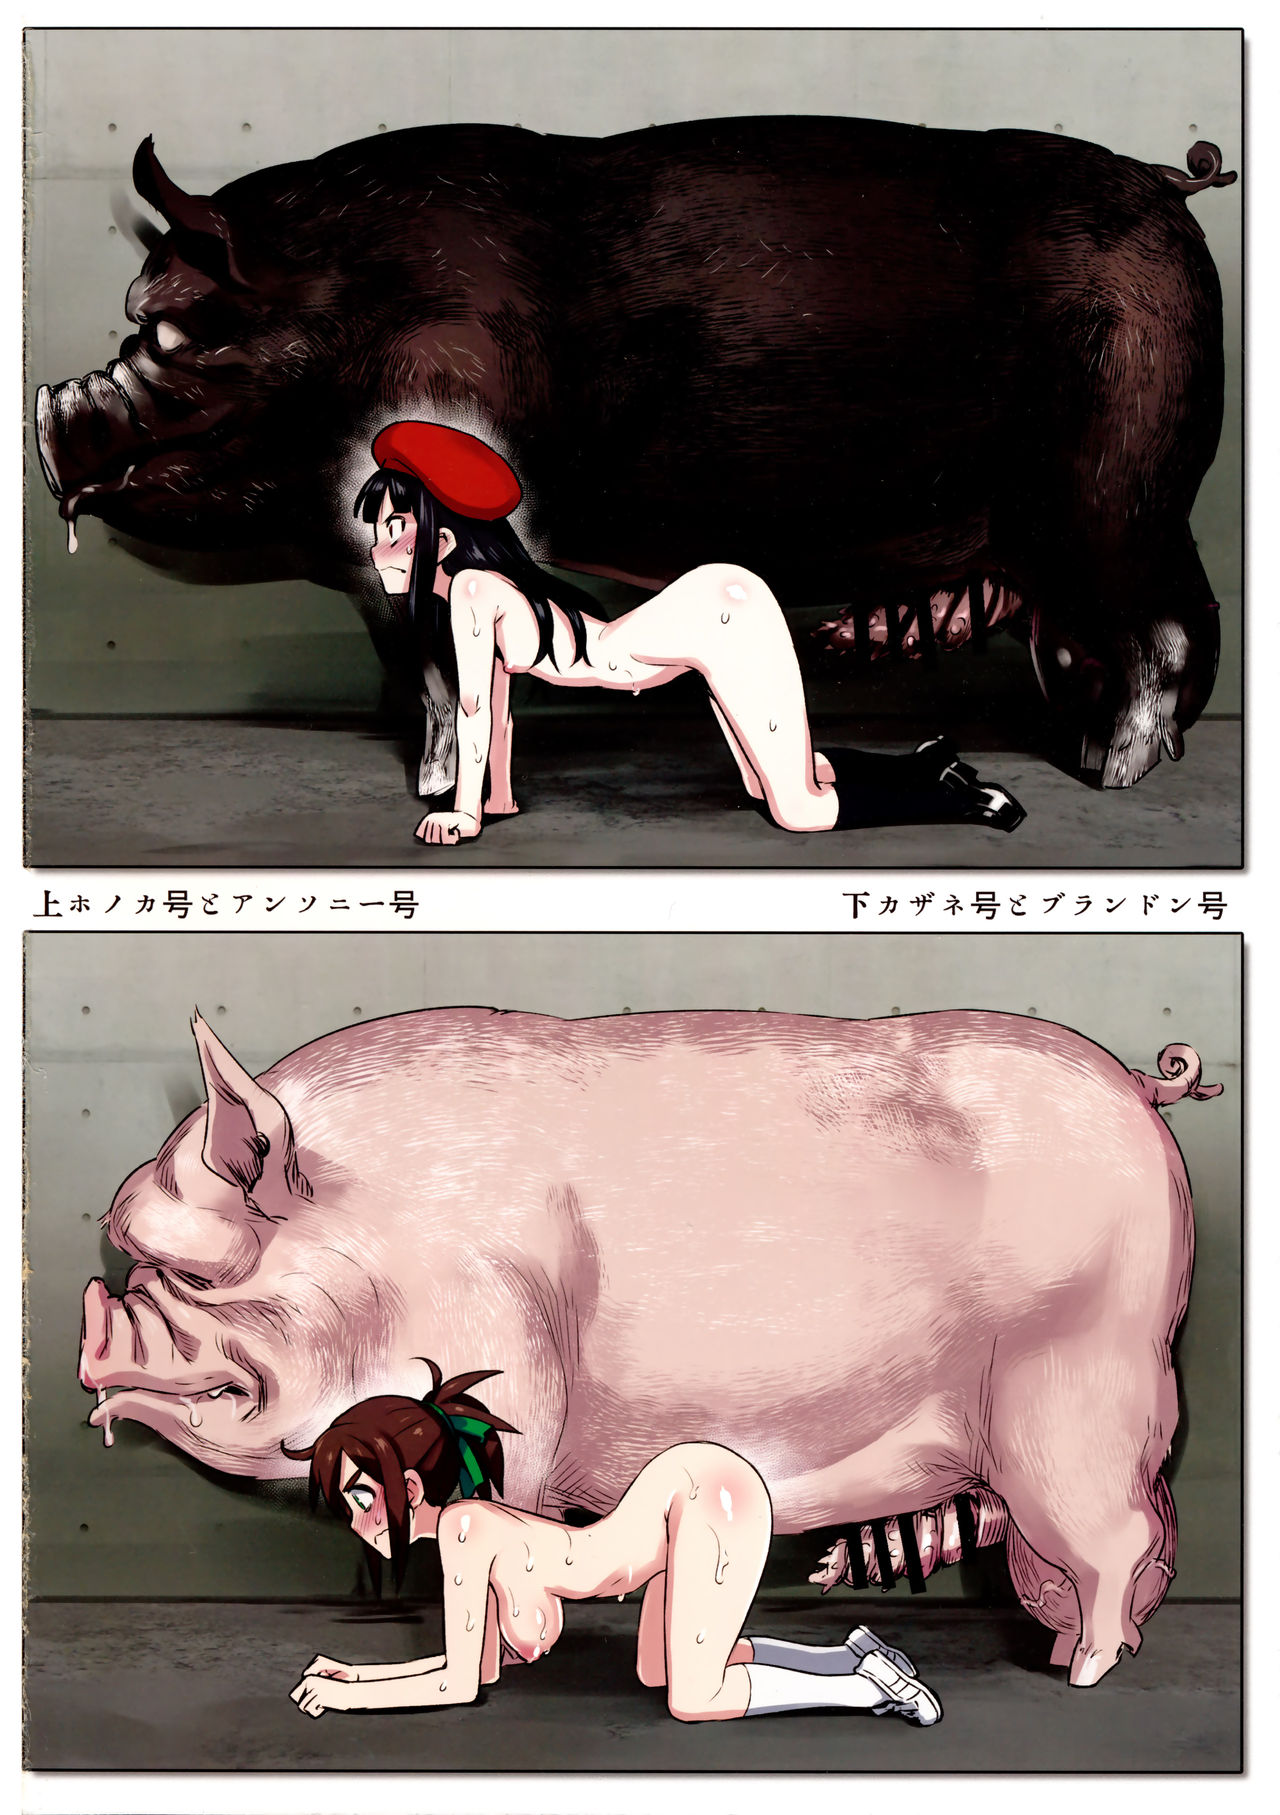 Порно комикс со свиньями фото 55